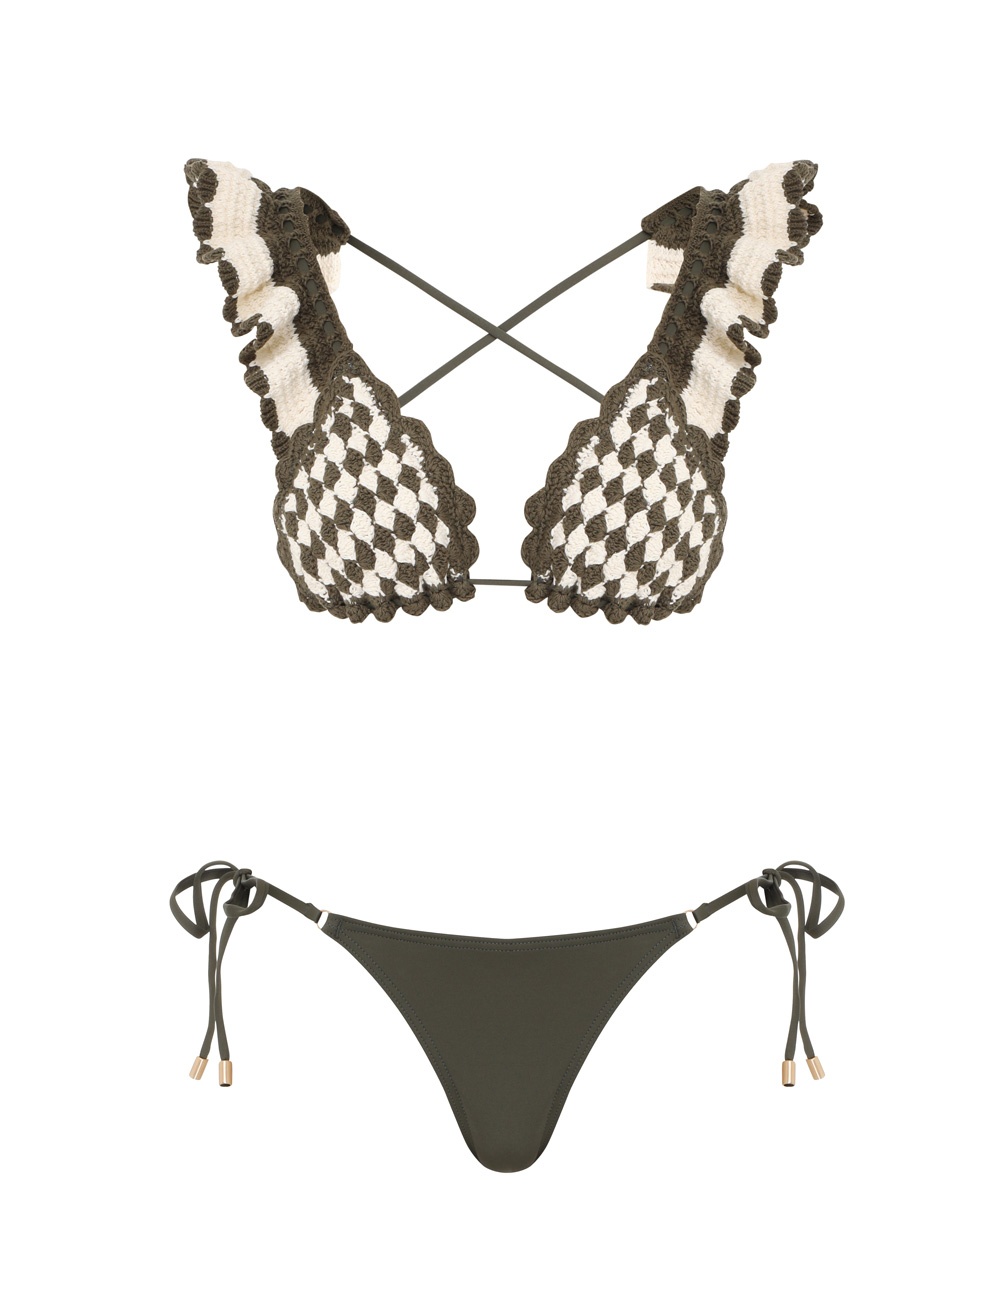 Junie Textured Knit Bikini Navy/Cream Online